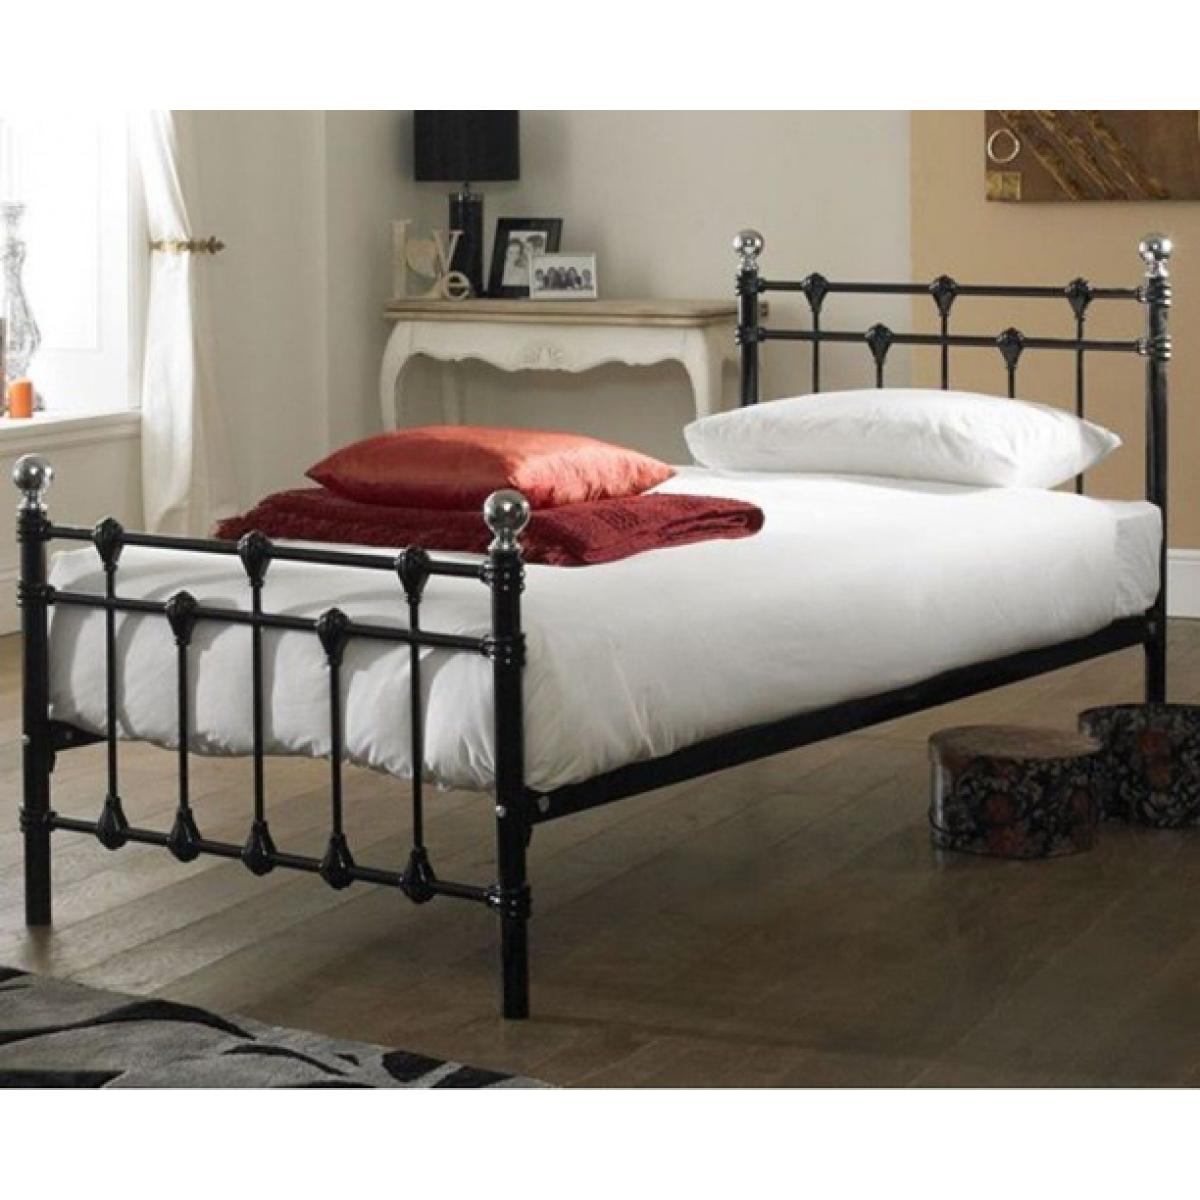 Кровати с железными спинками фото